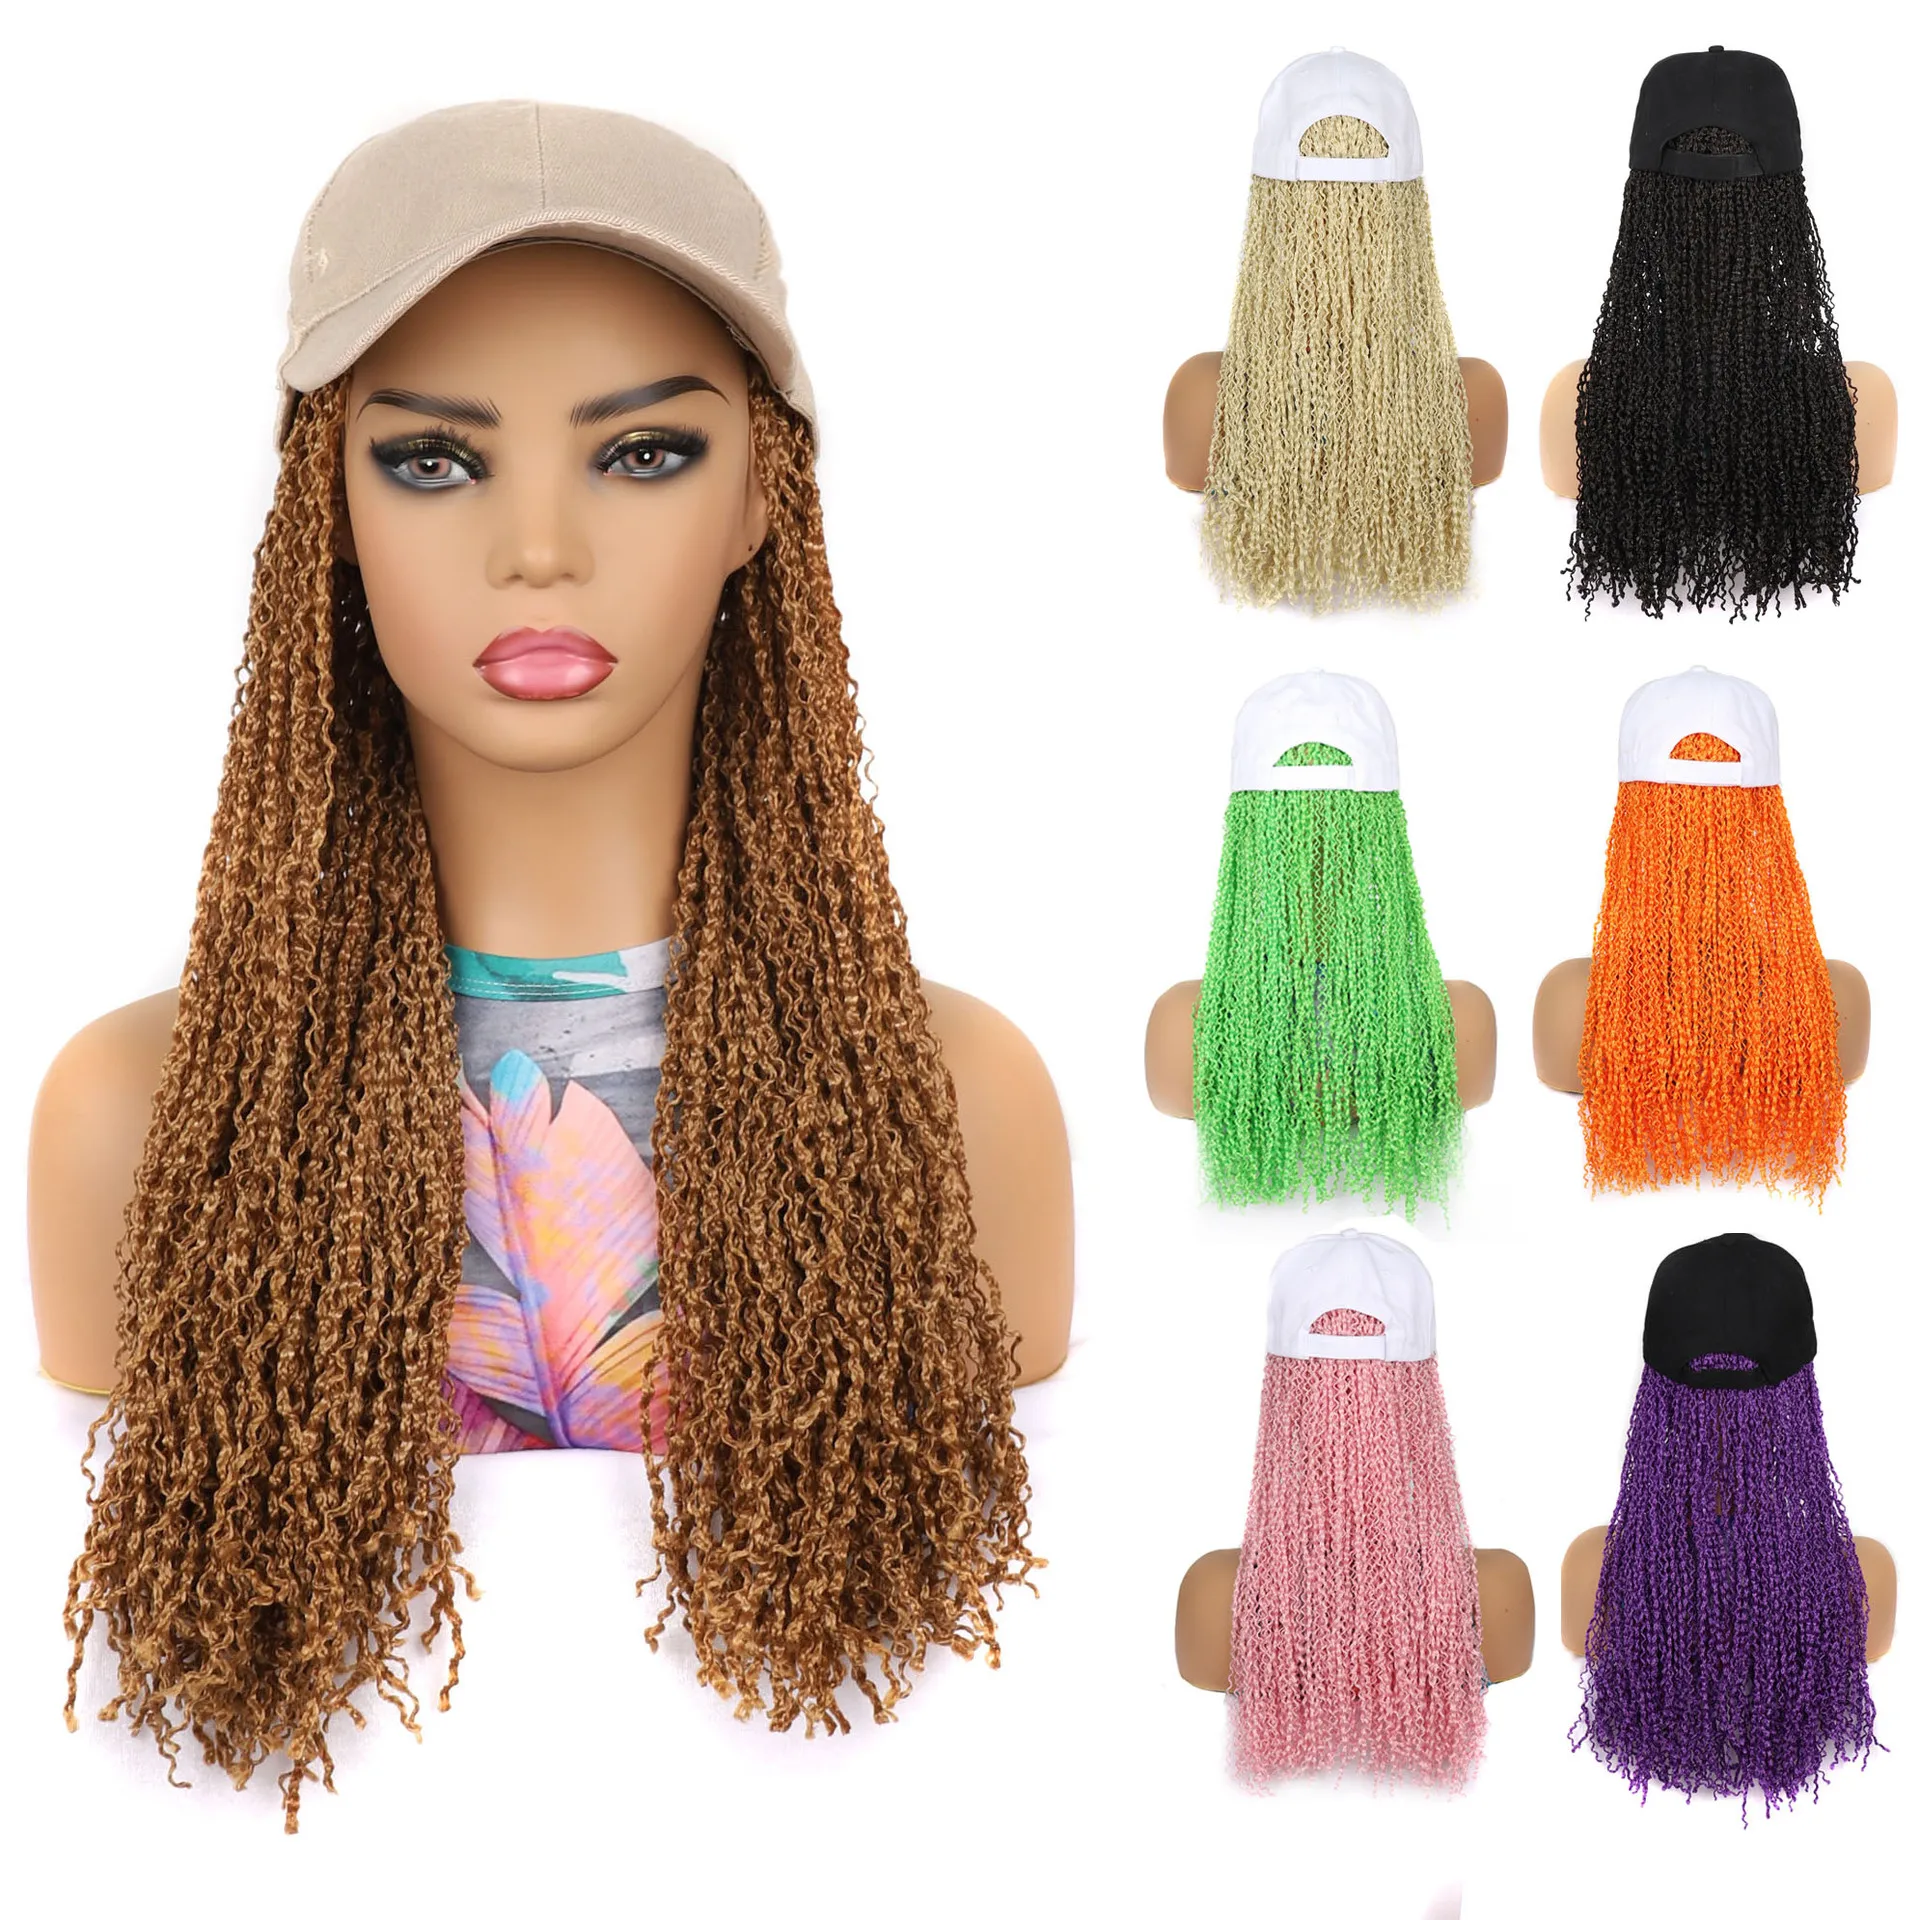 Бейсбольная кепка, парик для волос с косичками Zizi Box, наращивание волос для женщин, 16-дюймовый синтетический парик для волос, бейсбольная кепка с дредлоками